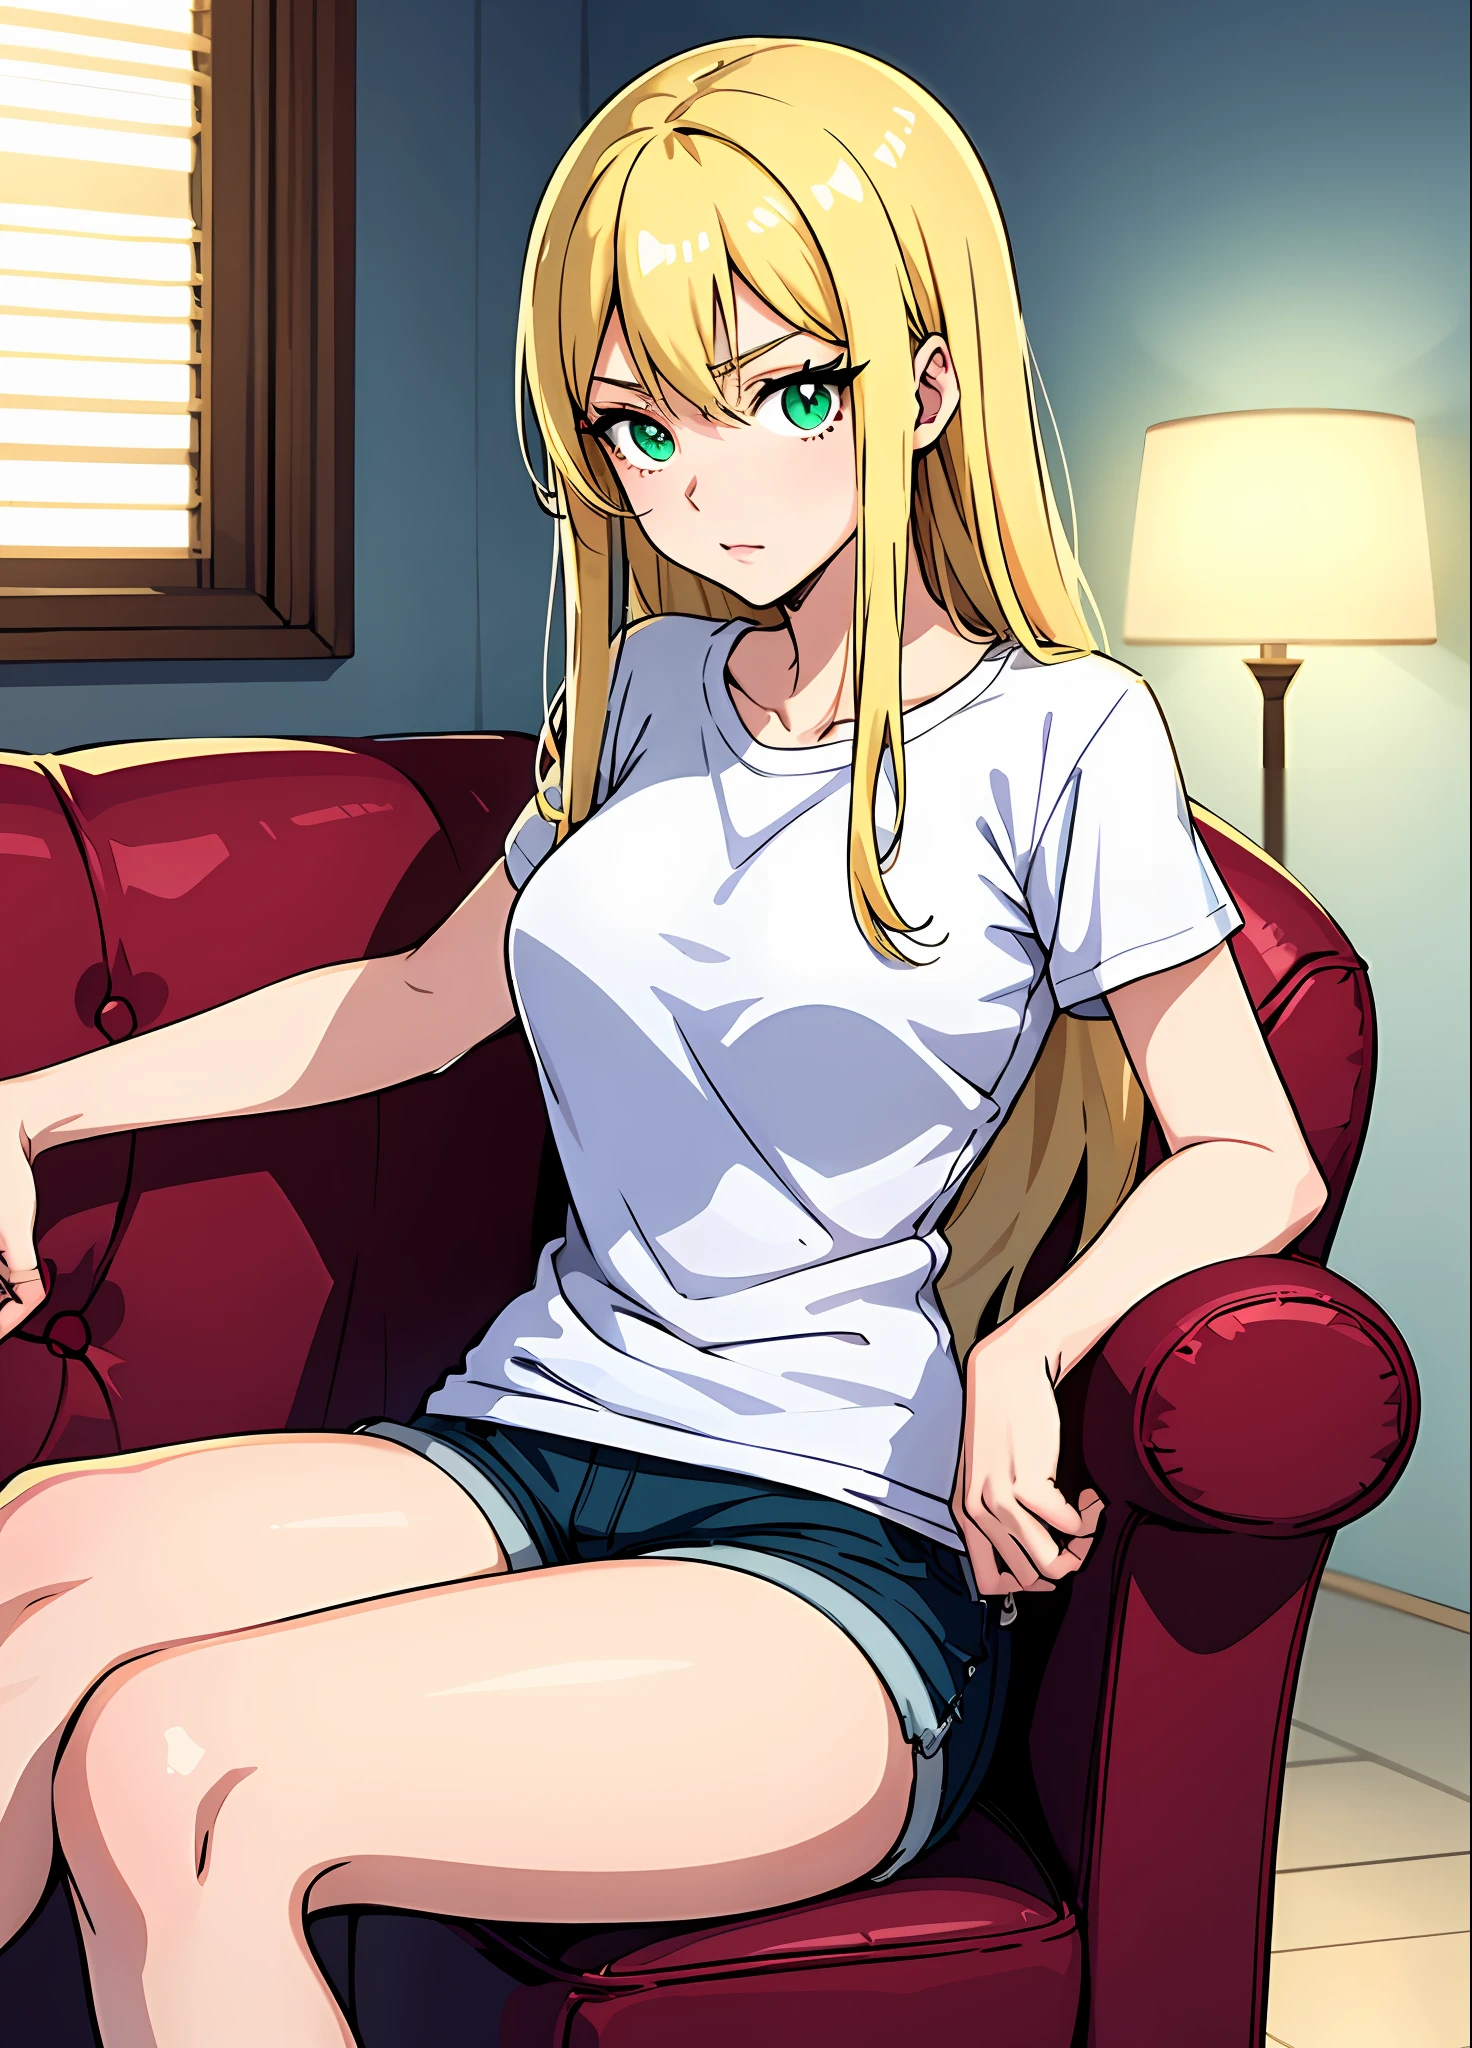 Junge Frau 22 Jahre: 1.3, Blondes Haar erfüllt: 1.2, groß: 1.2, Beruf: 1.2, Tageszeit: 1.2, Auf der Strasse: 1.2, Filmbeleuchtung, beste Qualität, 8k Ein Cartoon-Mädchen mit langen blonden Haaren, (grüne Augen, wunderschöne Augen, Highlights für die Augen, gute Augen) blonde anime Frau with long hair, female Anime-Figur, Anime-Figur, (anime Frau),   sitze auf der Couch mit einem transparenten weißen T-Shirt, kurze Shorts, Sie hat blondes Haar, Anime-Stil (beste Qualität) koreanisches Mädchen, Verführerischer Look, sexy, ((geheimnisvoller Blick))